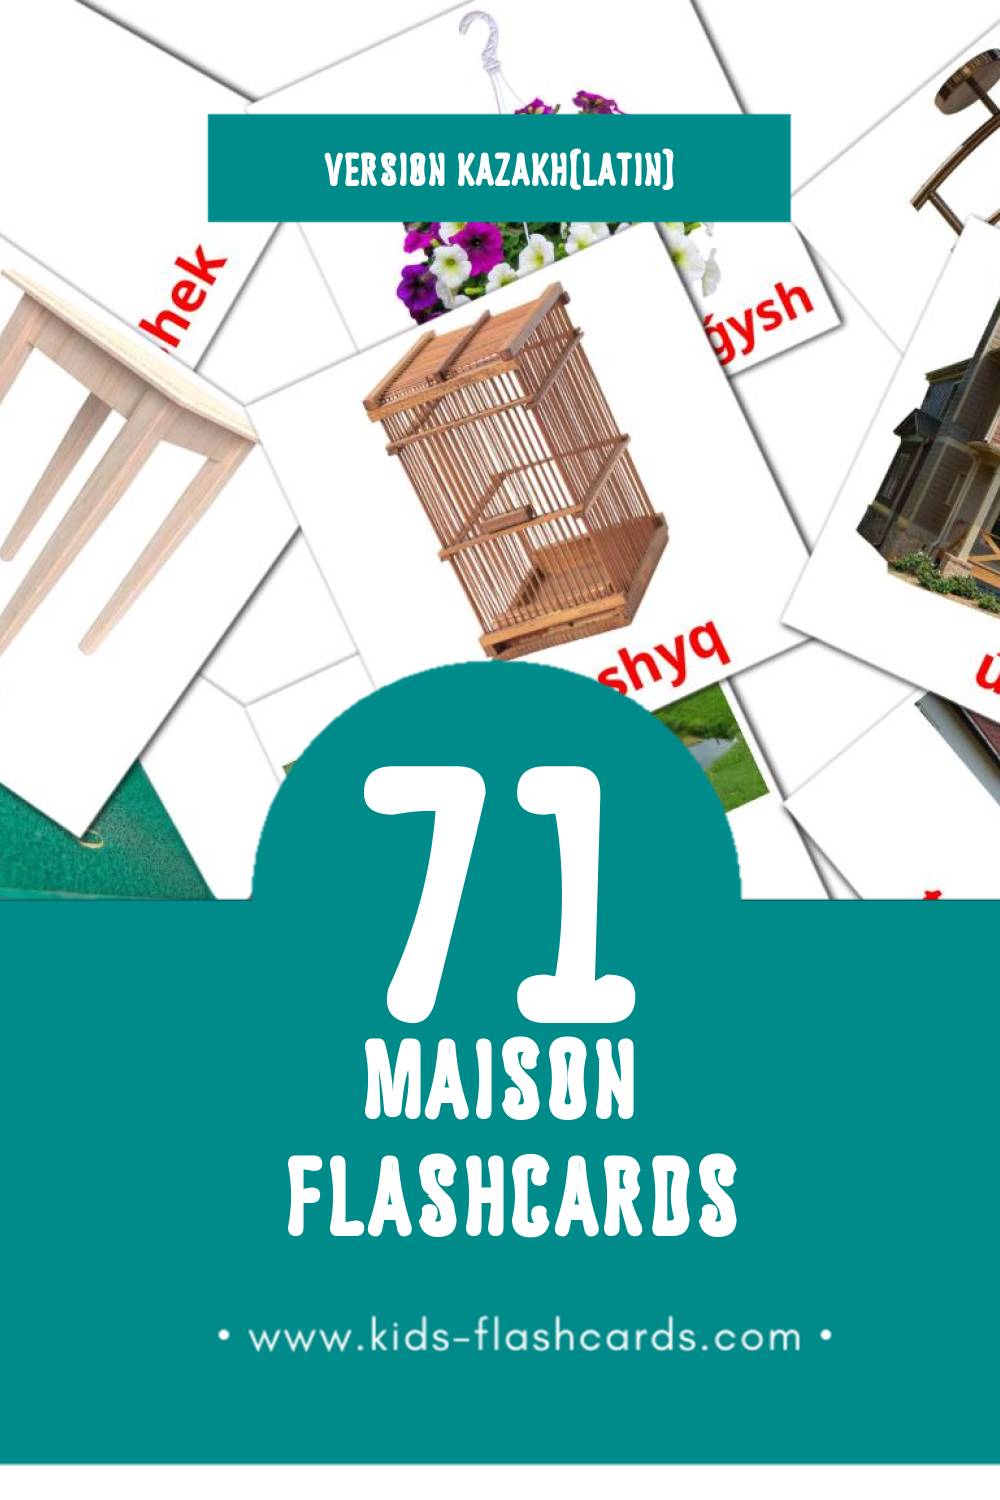 Flashcards Visual Úı pour les tout-petits (71 cartes en Kazakh(latin))